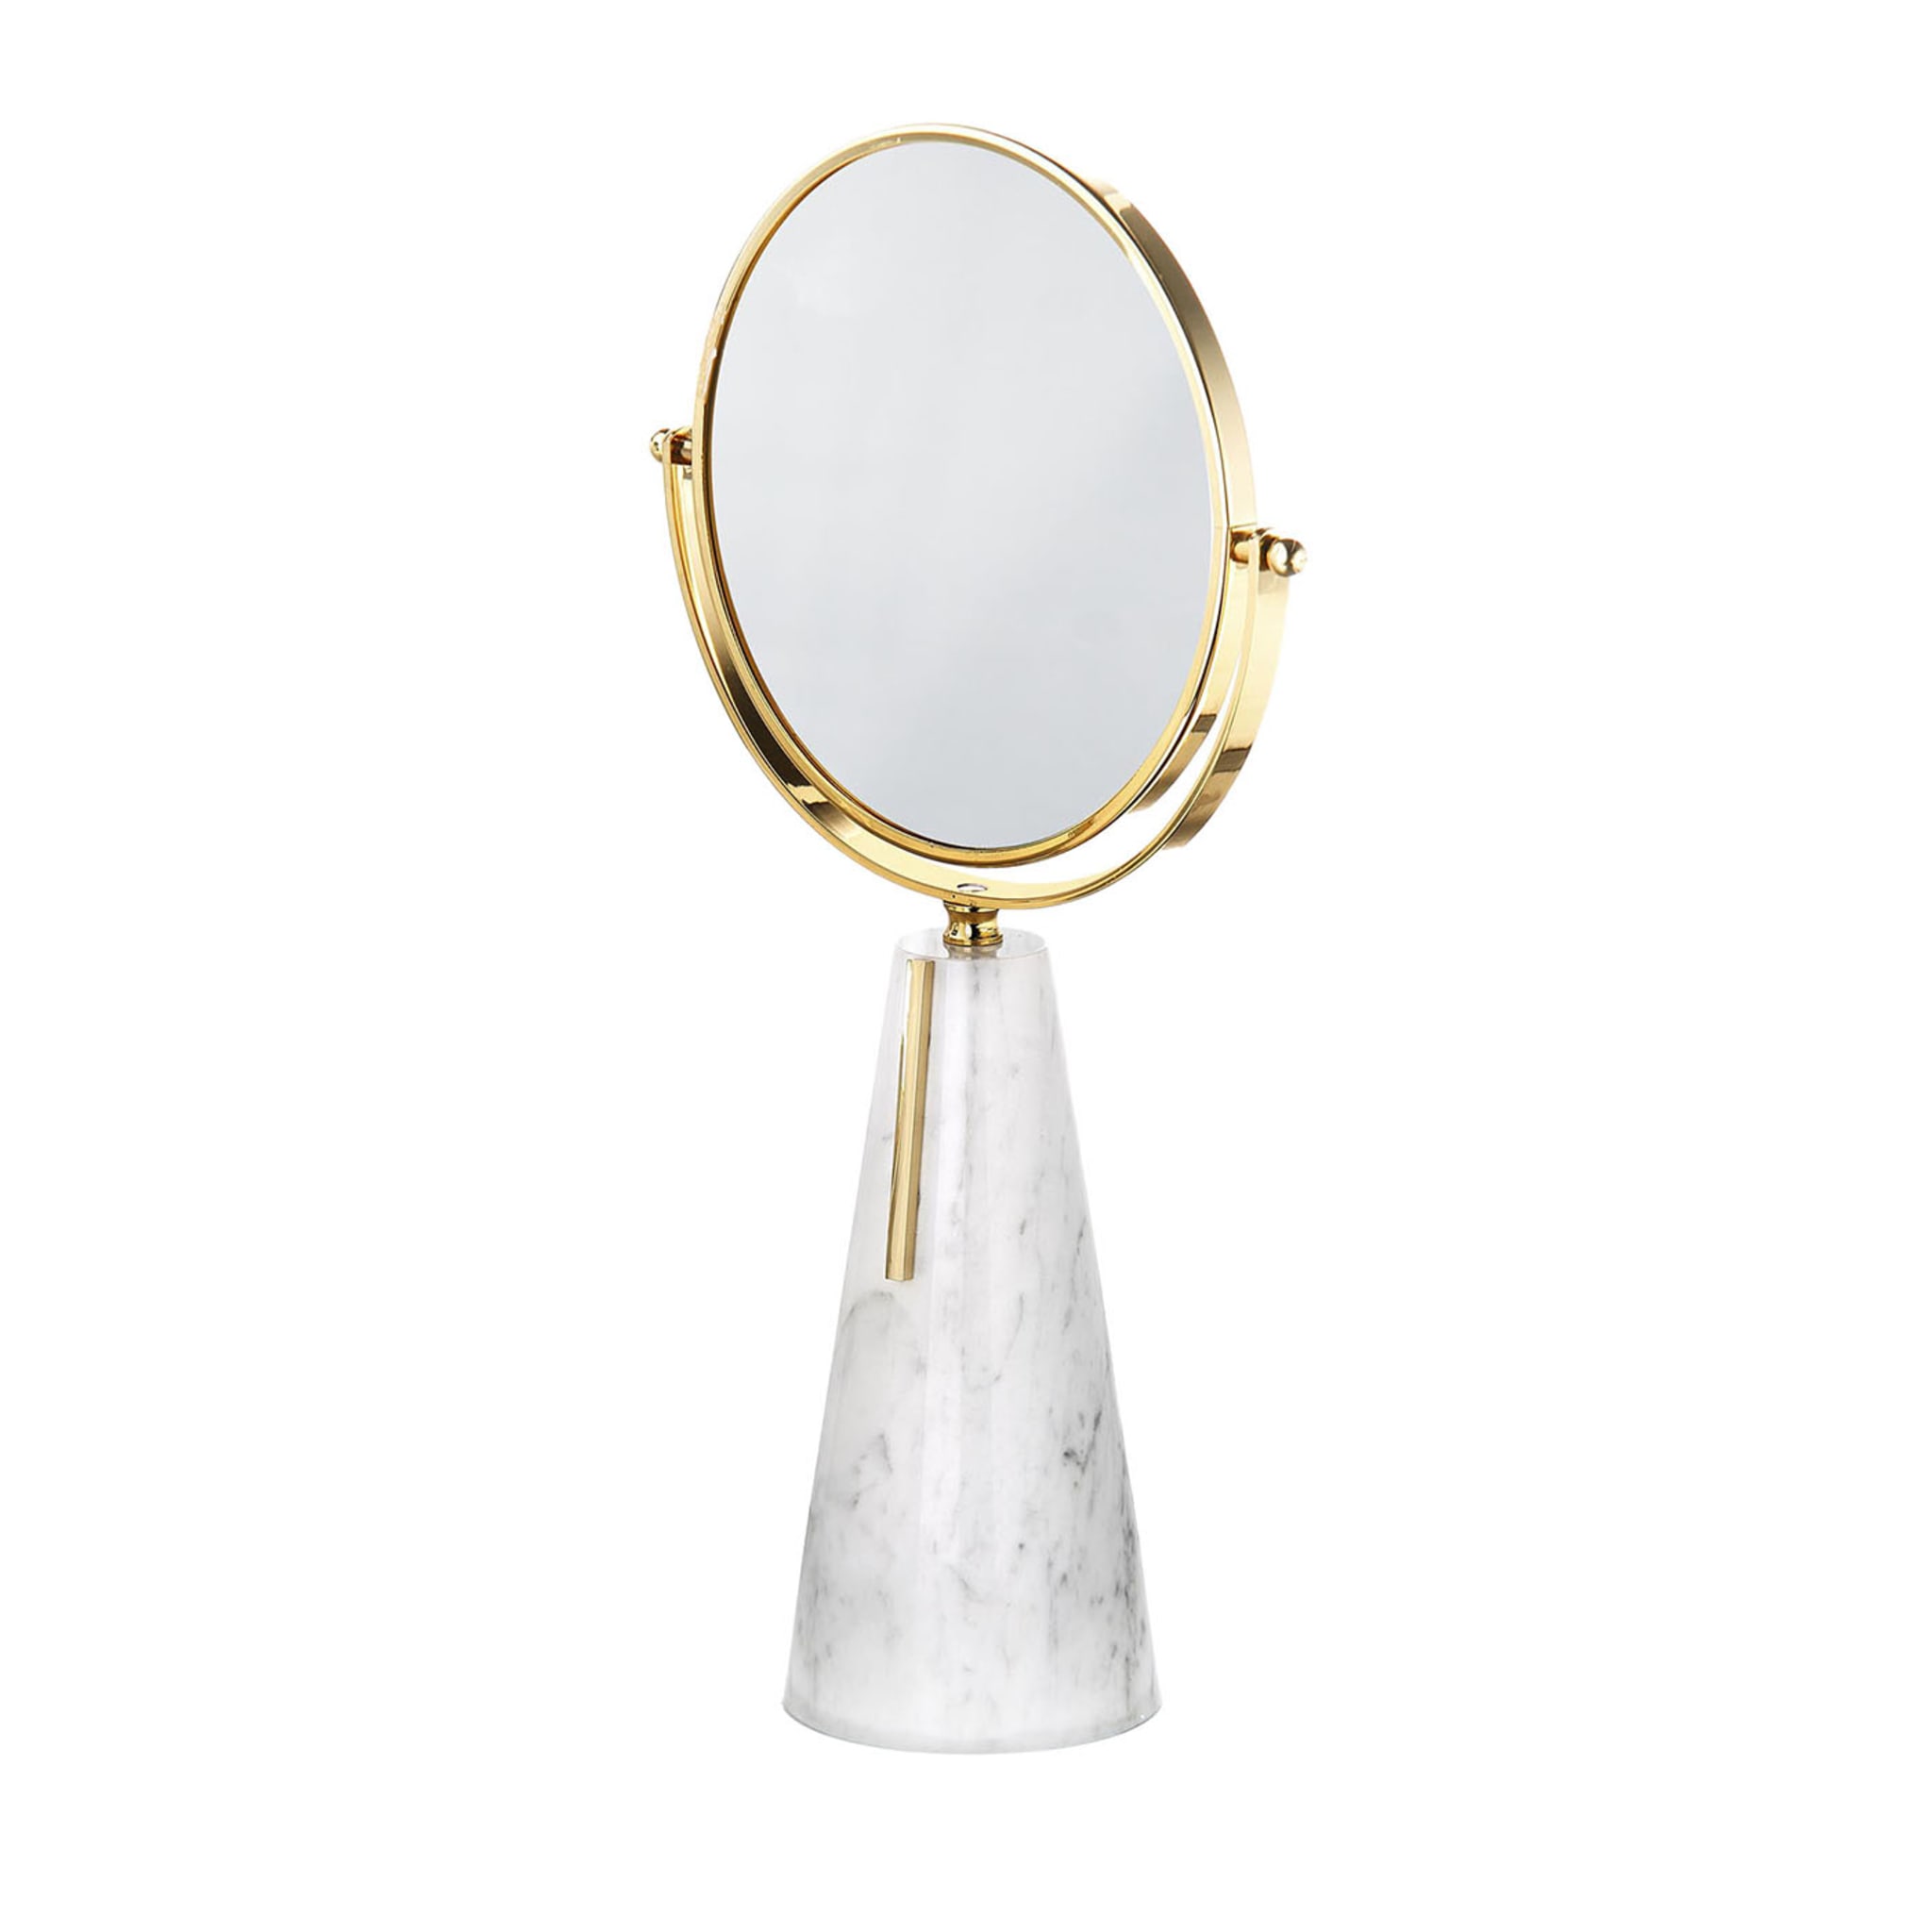 Specchio da tavolo della collezione Carrara Jewels - Vista principale